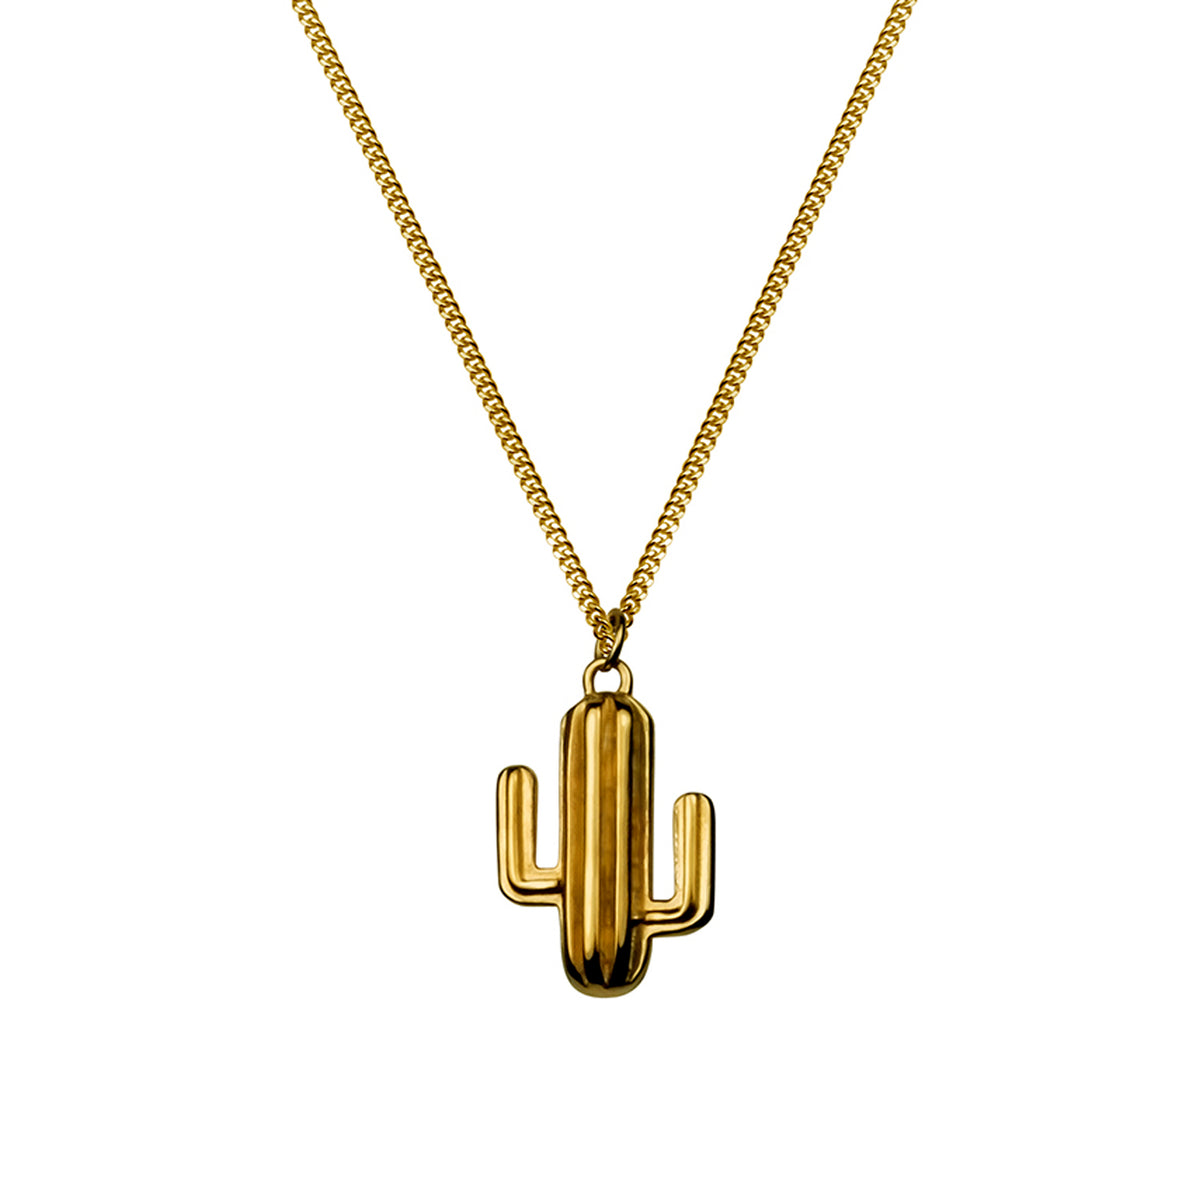 Cactus Necklace - Gold vermeil - IndependentBoutique.com